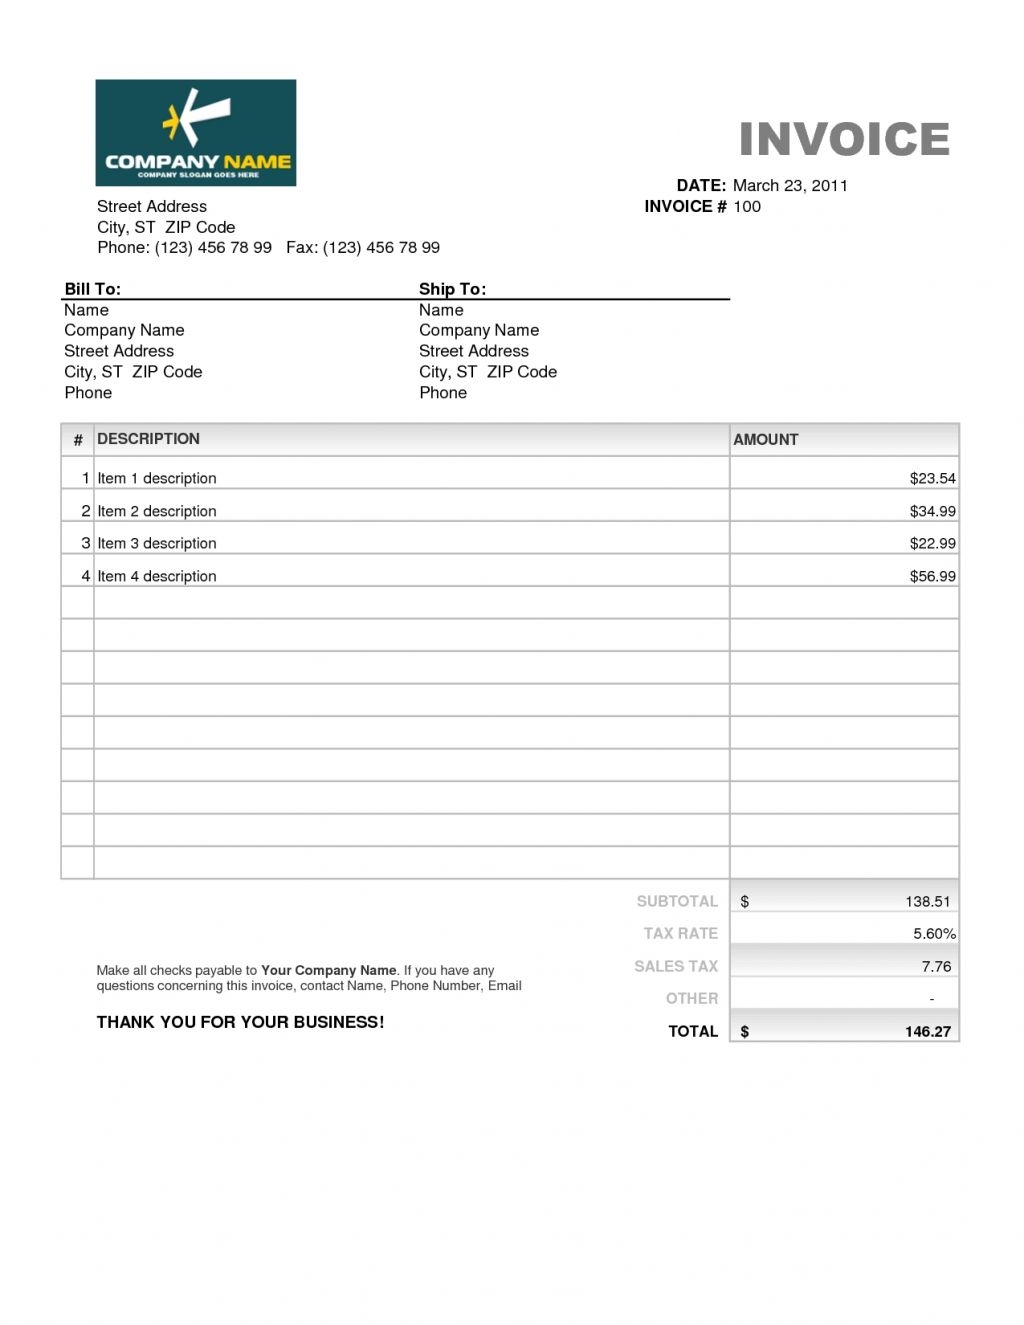 quickbooks custom invoice custom invoice templates for quickbooks invoicegenerator 1024 X 1325